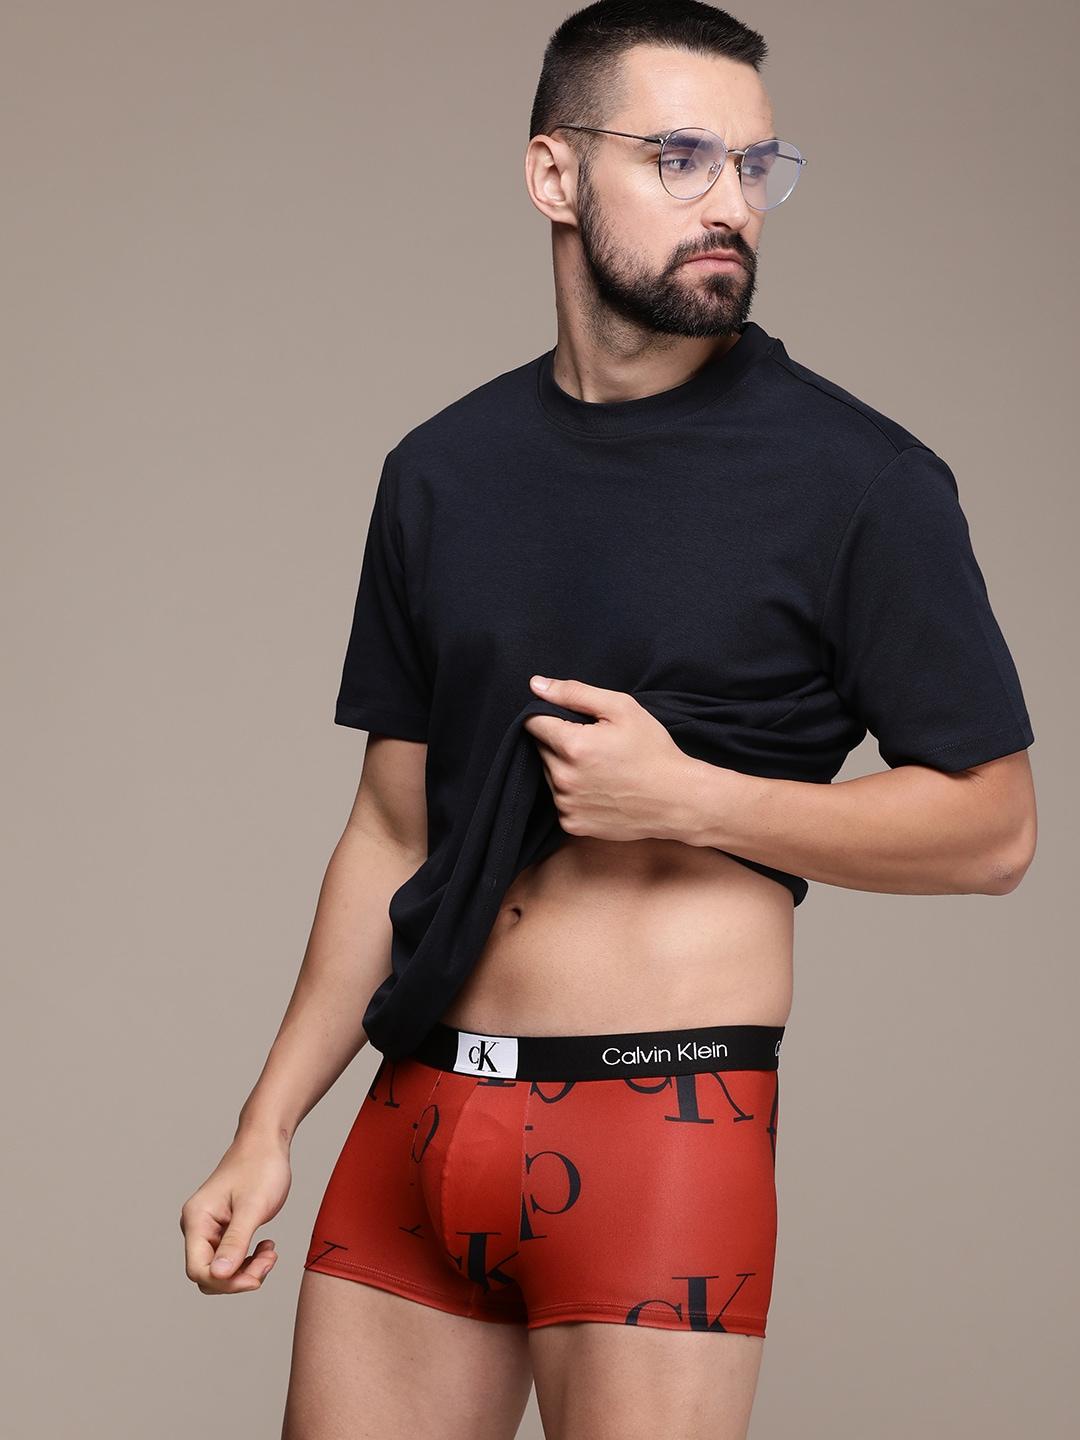 Calvin Klein Underwear Men Printed Trunks